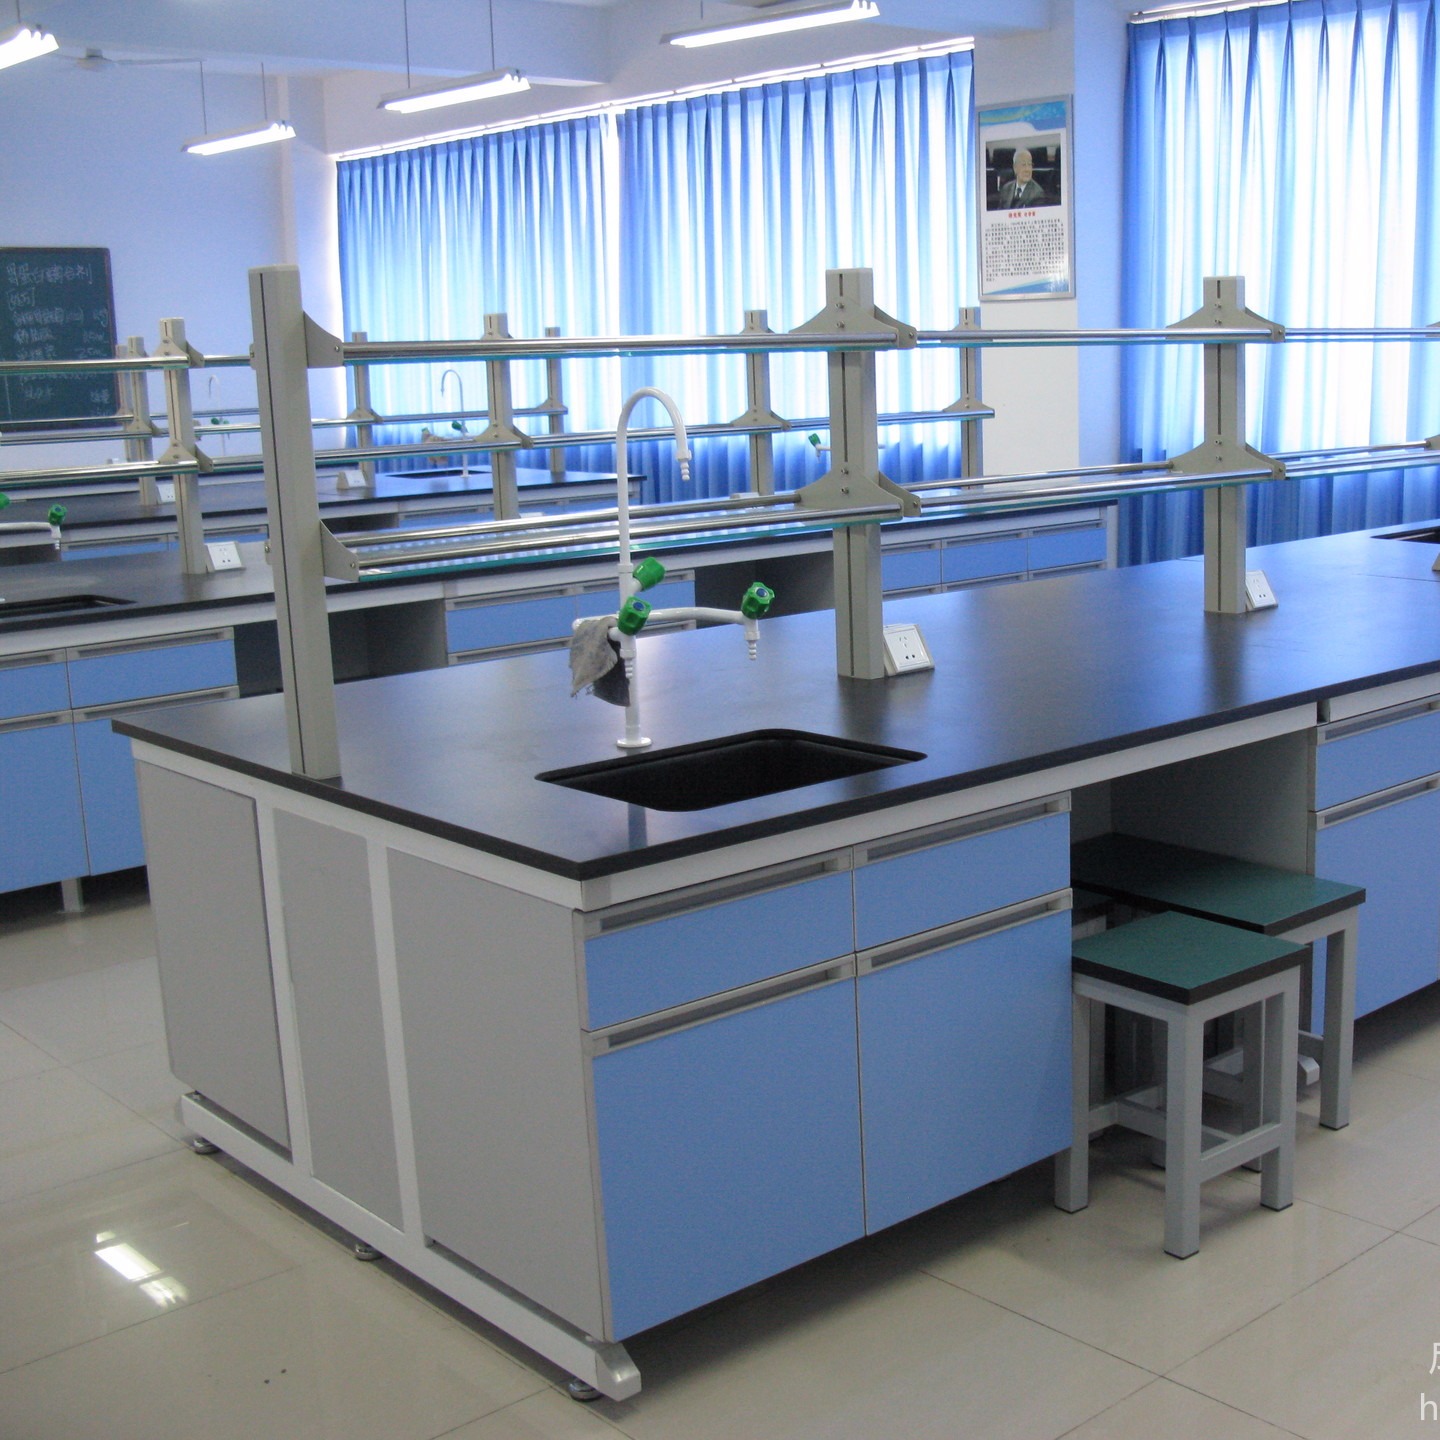 四川省卫生  学校实验台  实验柜  展示陈列柜  专业生产定制图片